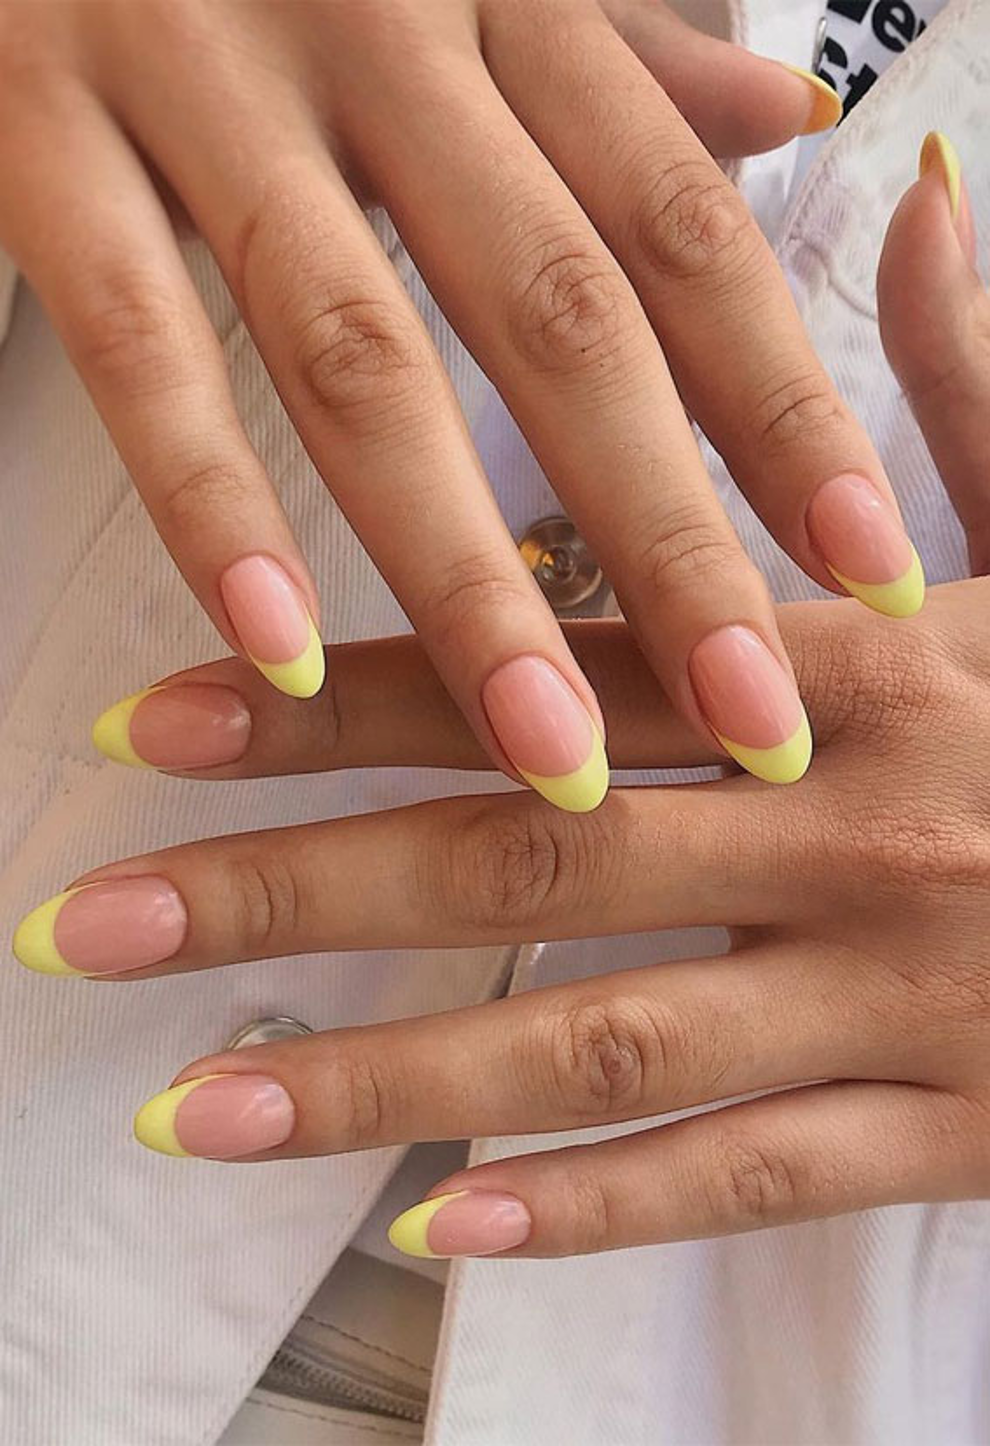 Uñas amarillo pastel: los diseños de uñas más alegres que son muy fáciles de copiar